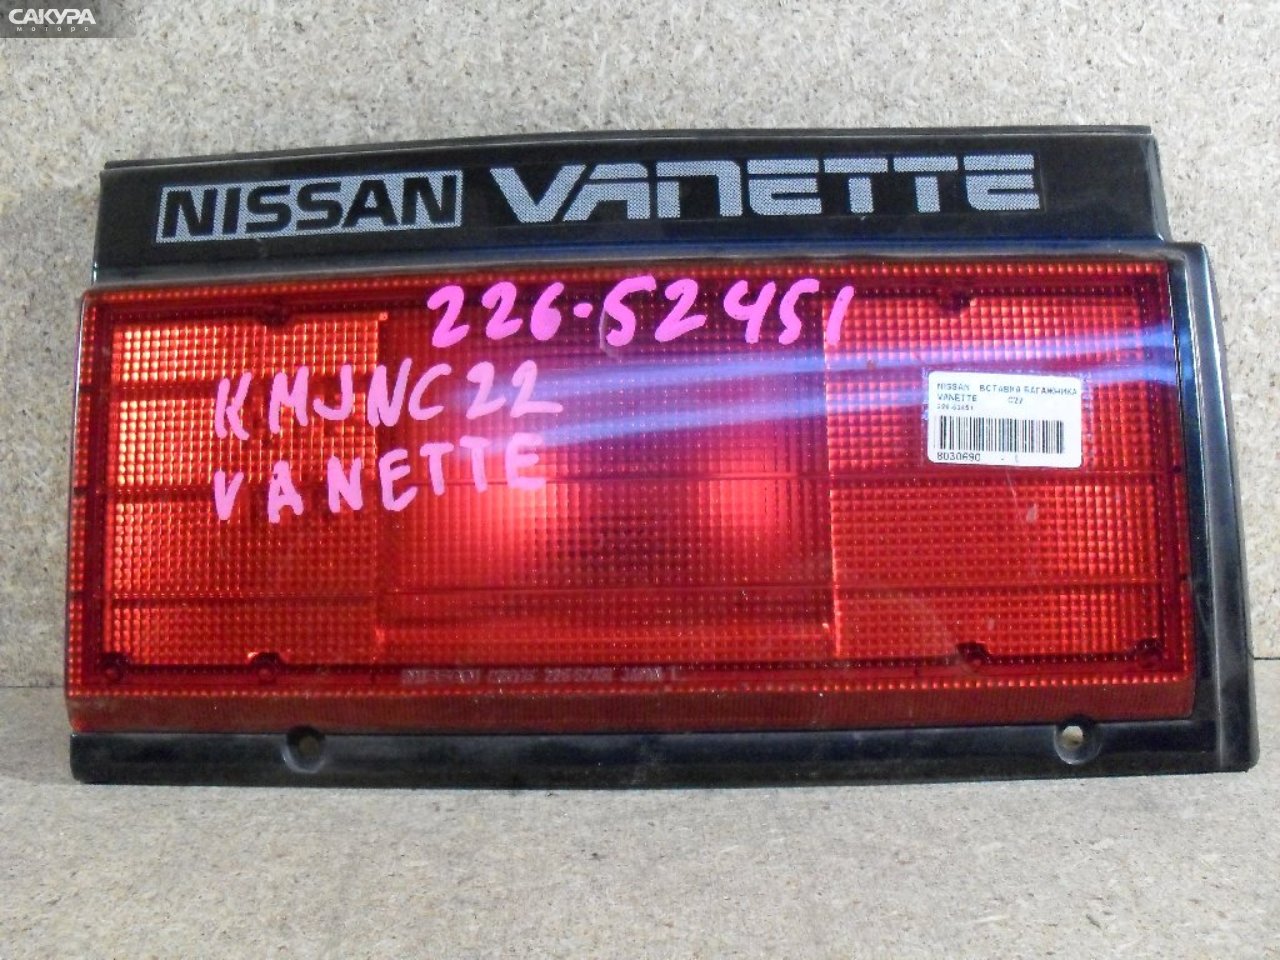 Фонарь вставка багажника левый Nissan Vanette JC22 226-52451: купить в Сакура Абакан.